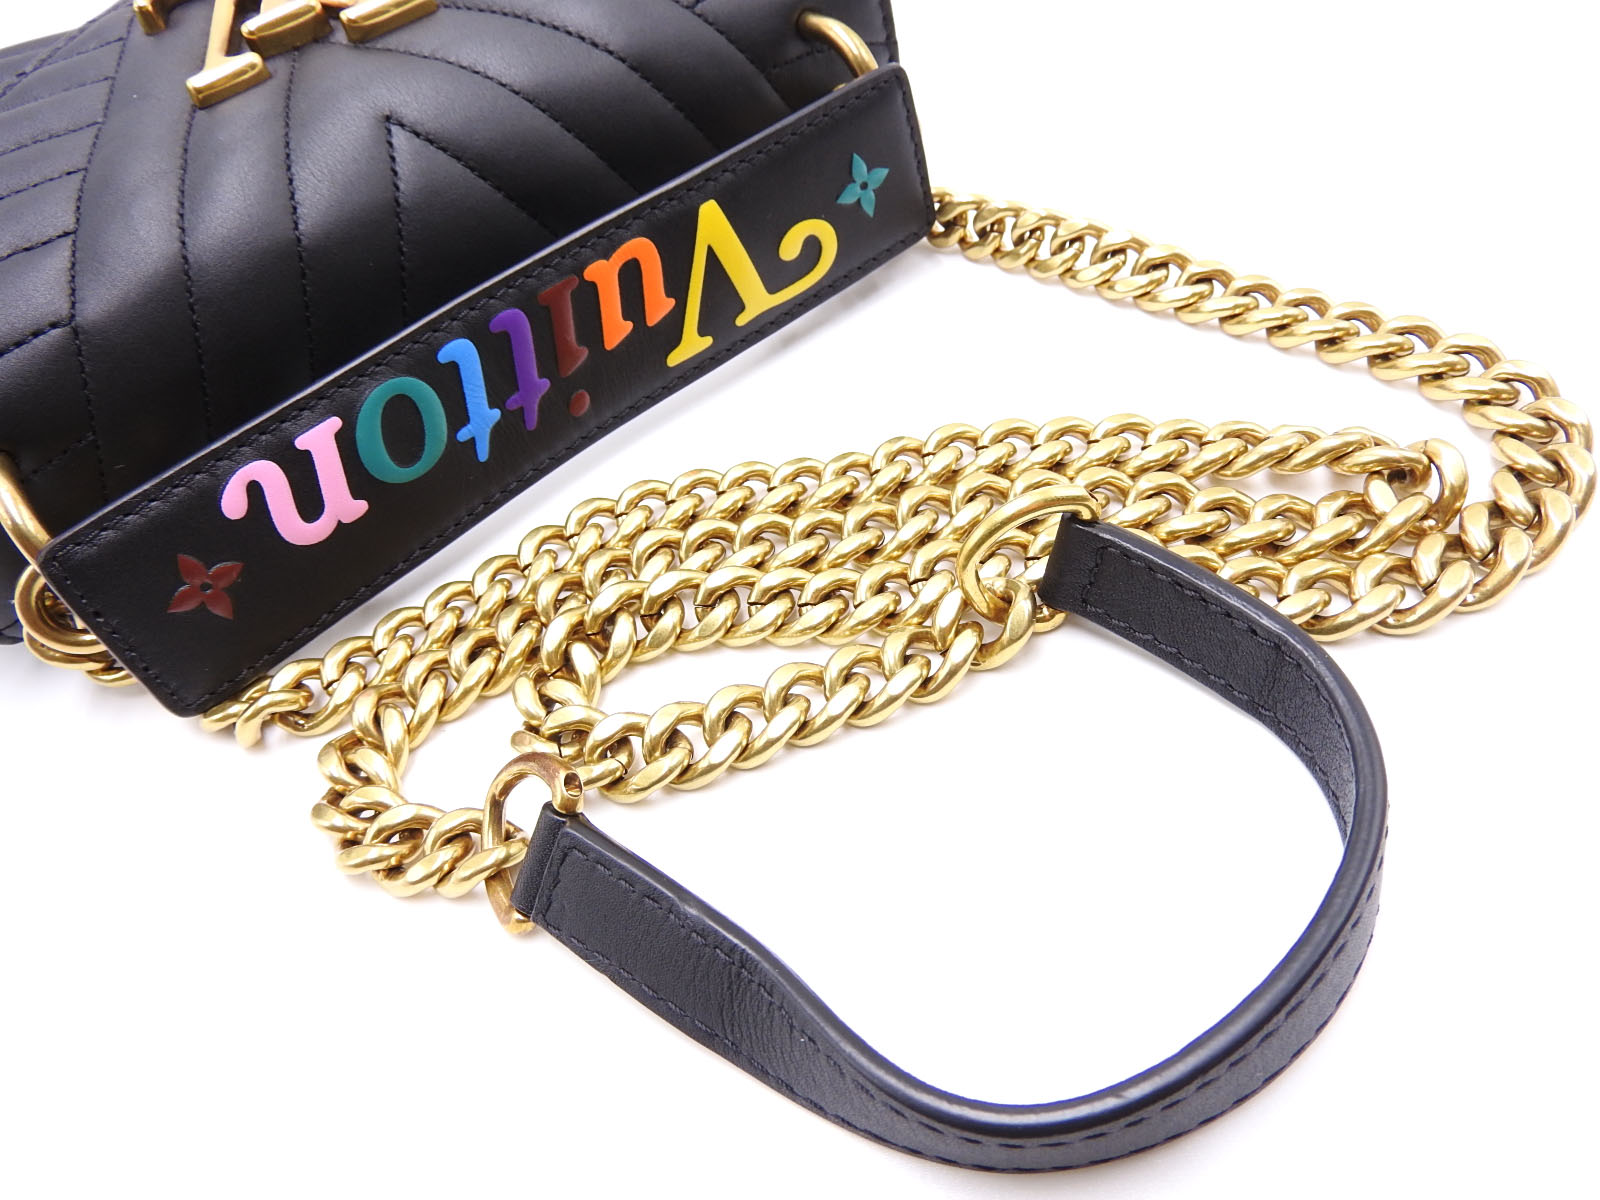 Auth LOUIS VUITTON New Wave PM Chain Shoulder Bag Leather Black M51683 V-0715 | eBay